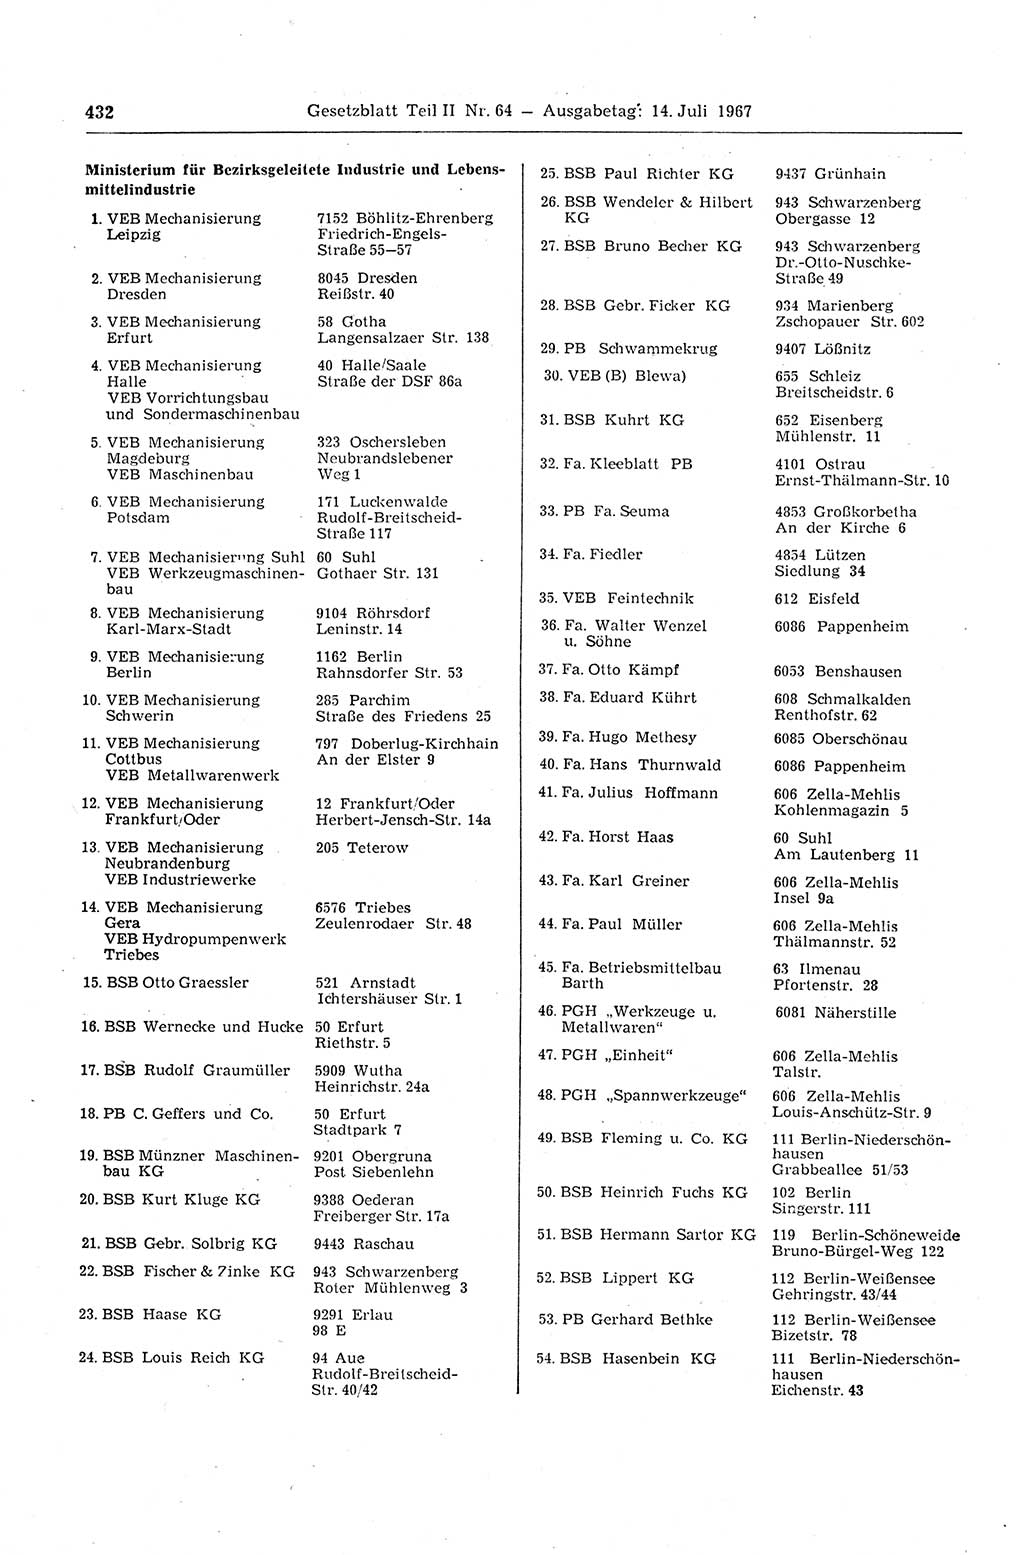 Gesetzblatt (GBl.) der Deutschen Demokratischen Republik (DDR) Teil ⅠⅠ 1967, Seite 432 (GBl. DDR ⅠⅠ 1967, S. 432)